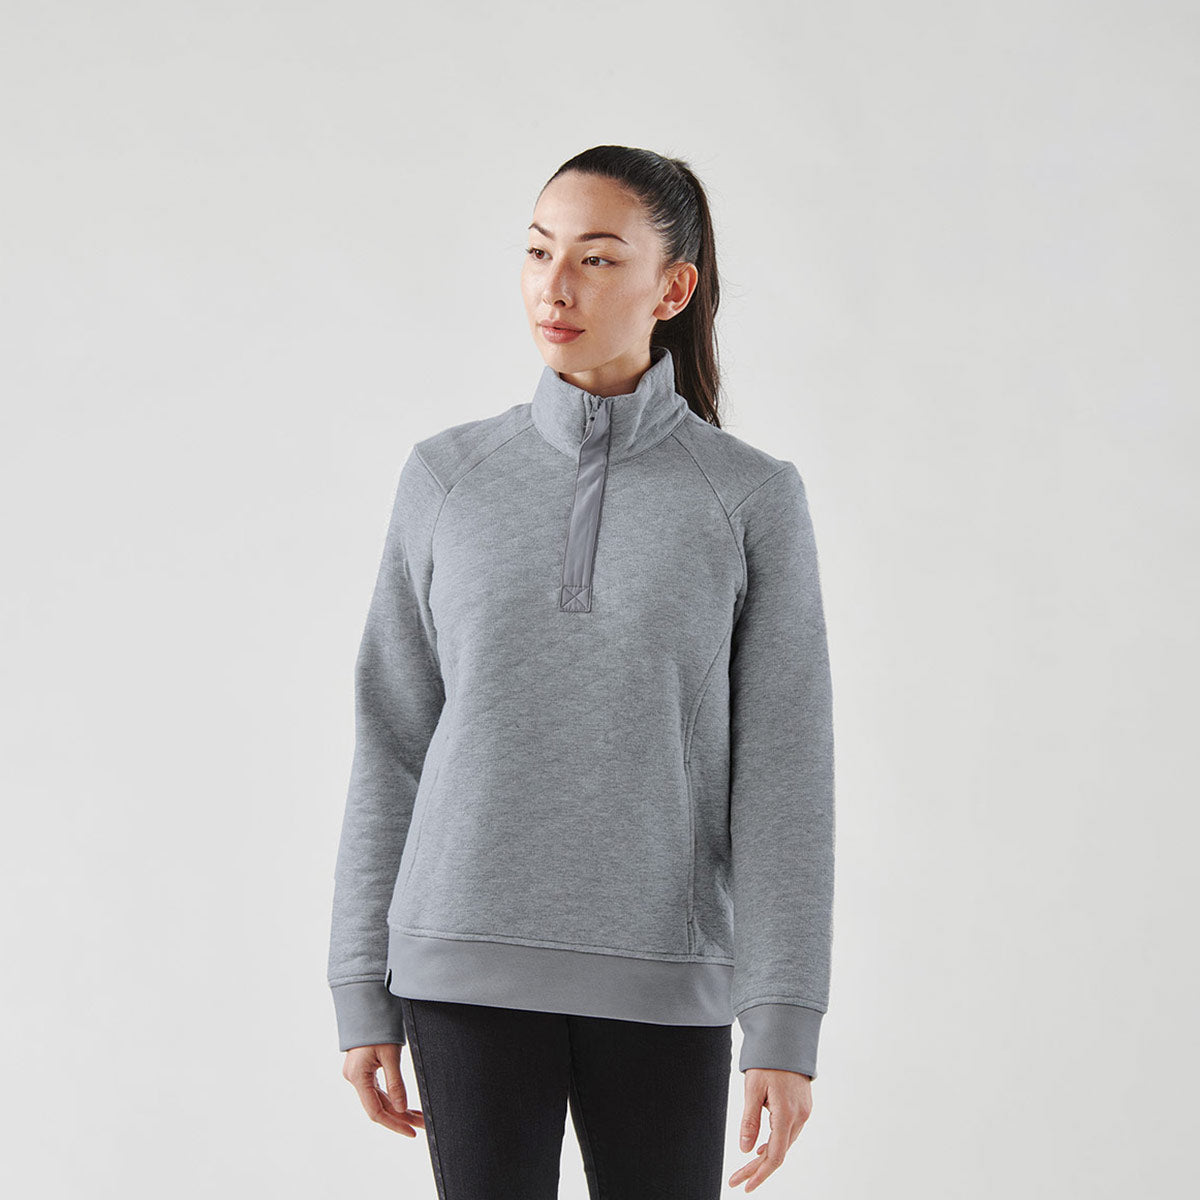 L00545 - Flux - 1/4 Zip Sweatshirt – Canada Sportswear Corp